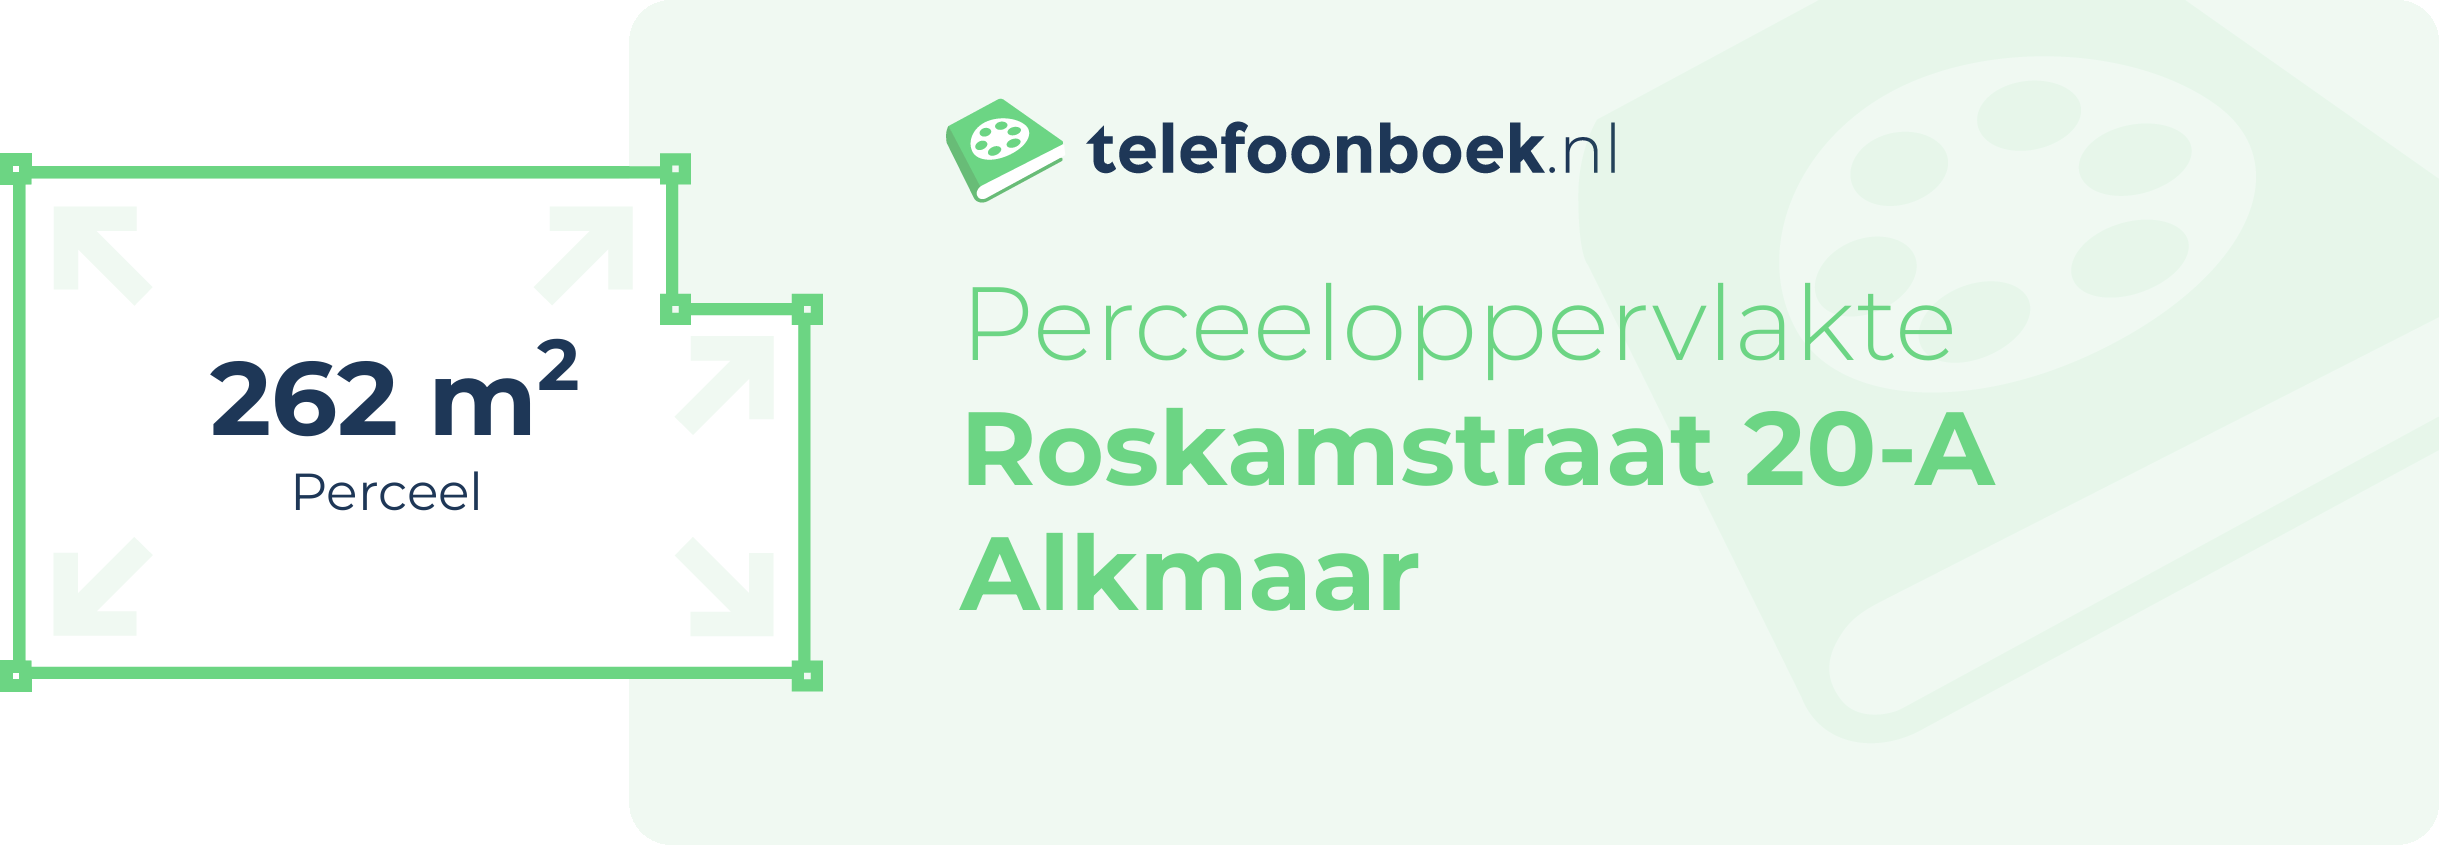 Perceeloppervlakte Roskamstraat 20-A Alkmaar